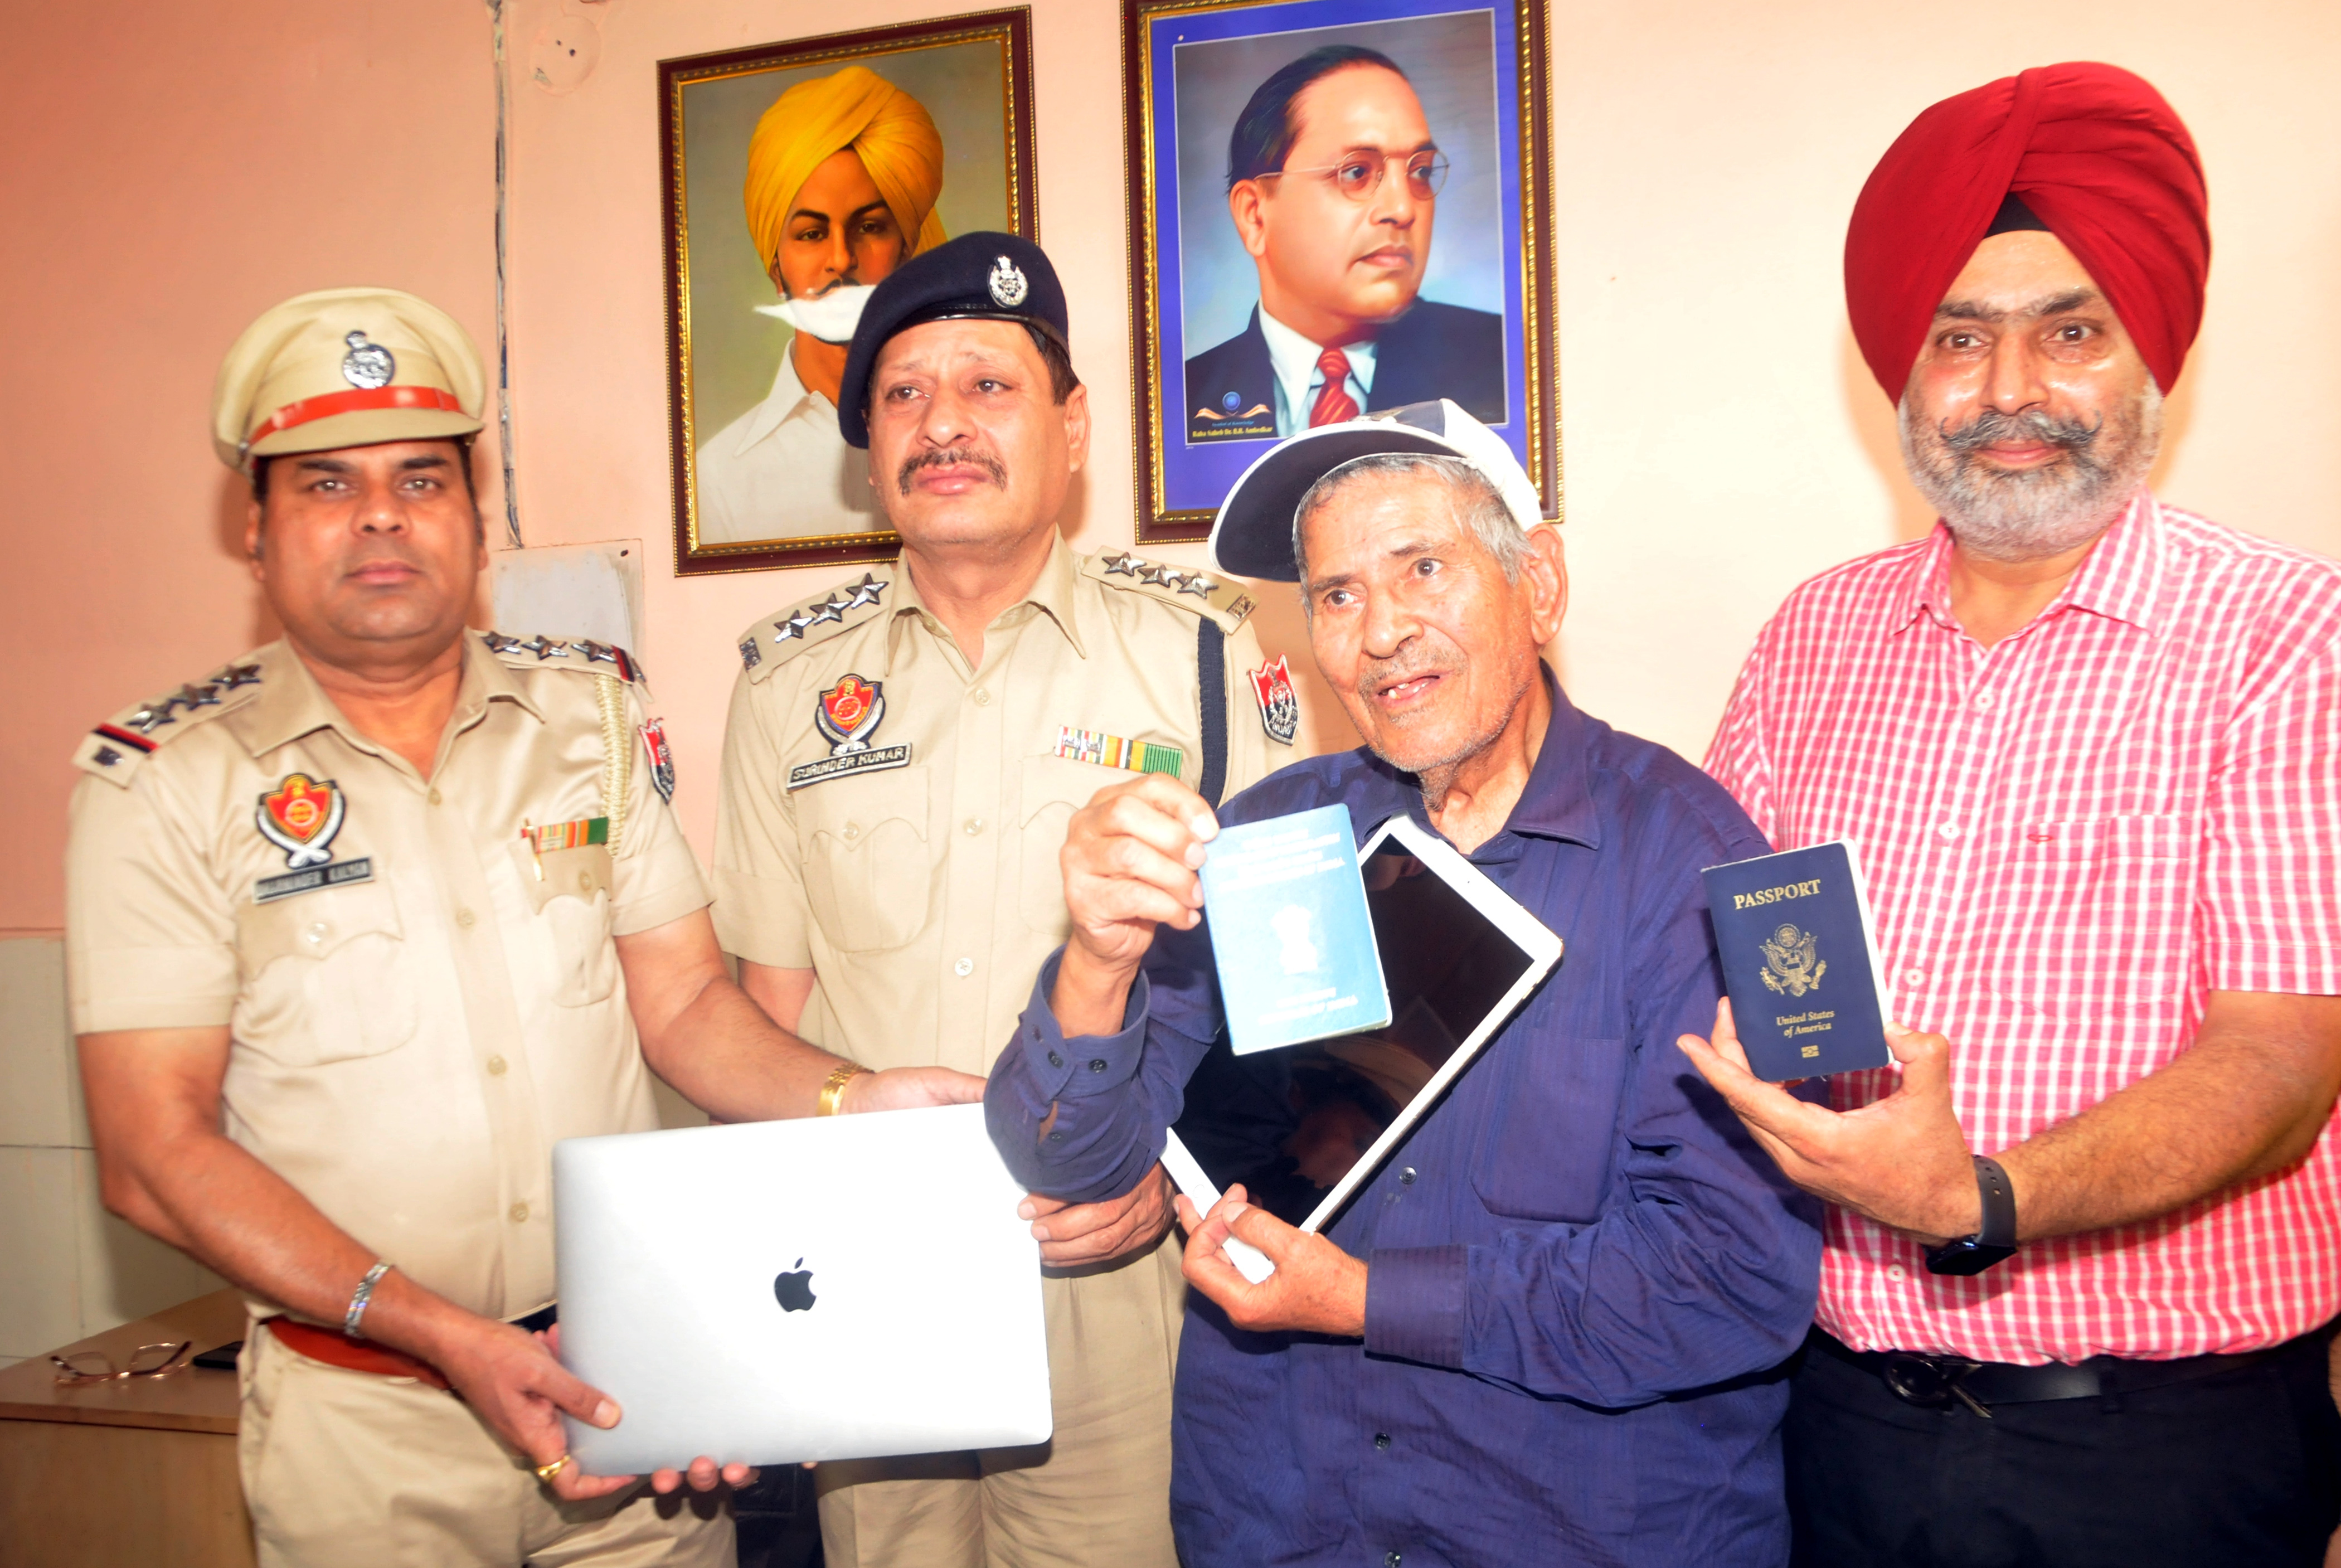 Honest GRP personnel return valuables to elderly NRI in Amritsar